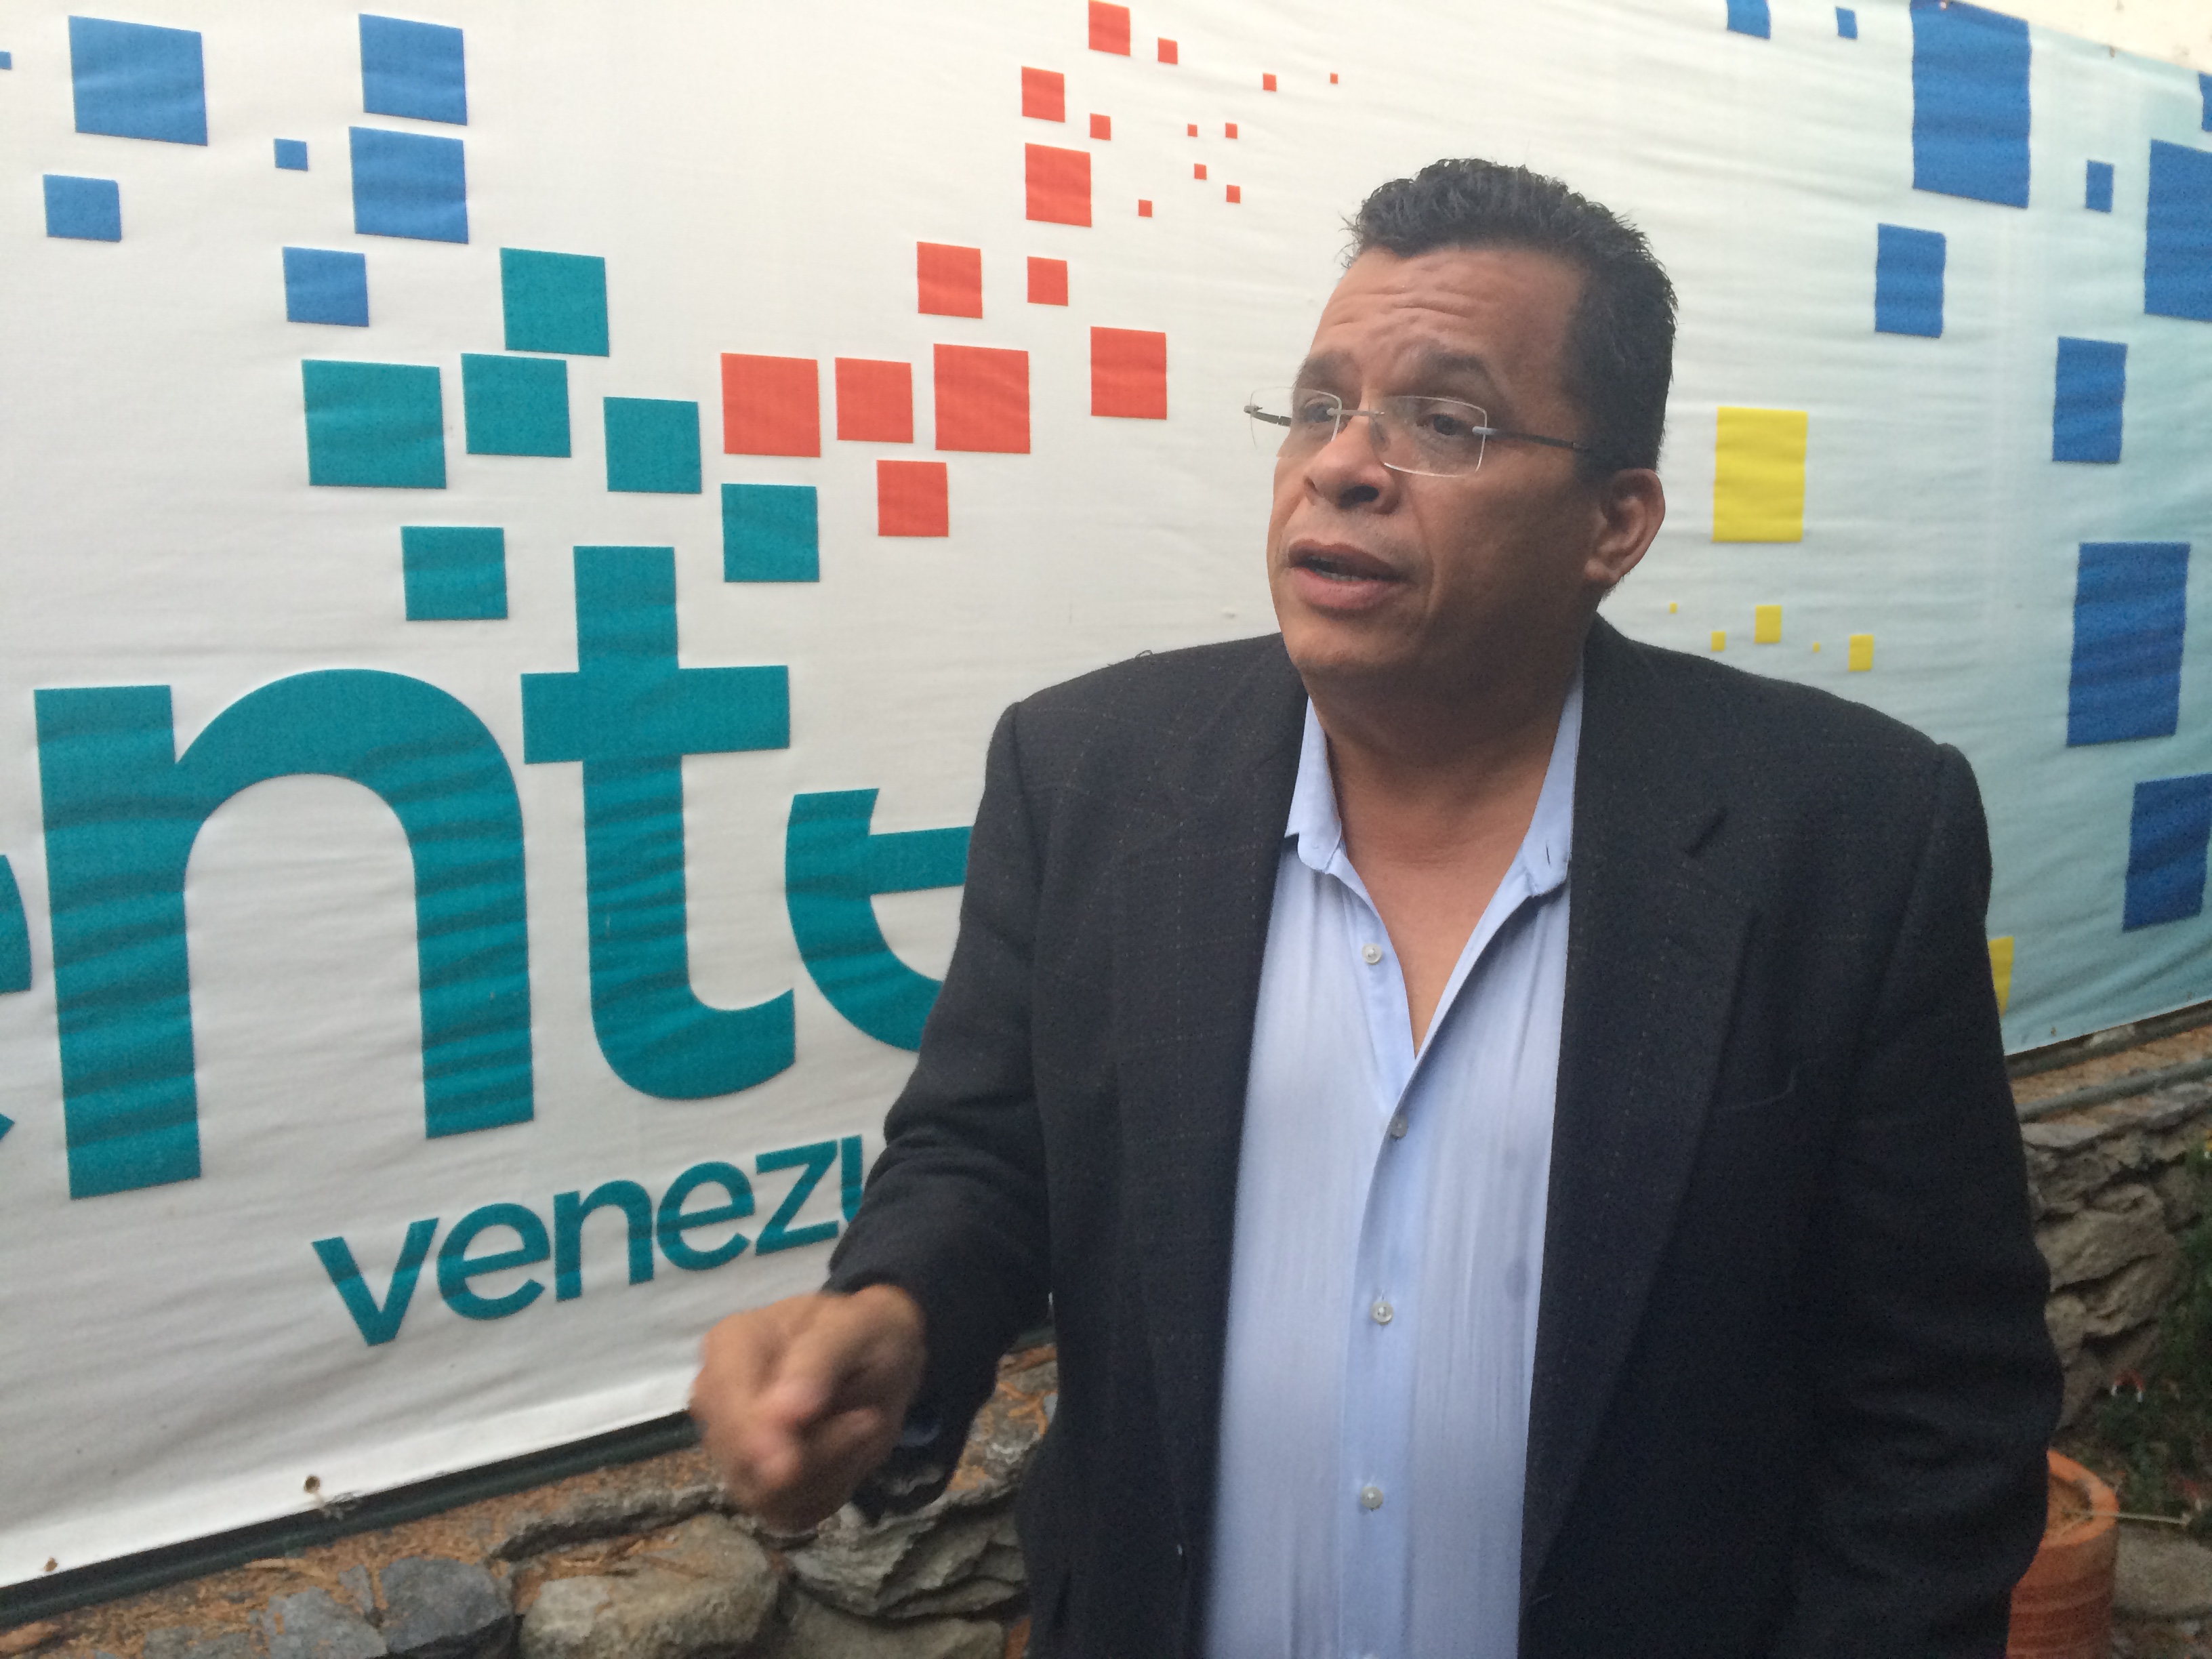 Diputados de Vente Venezuela reciben denuncias sobre amenazas de Pdvsa a trabajadores